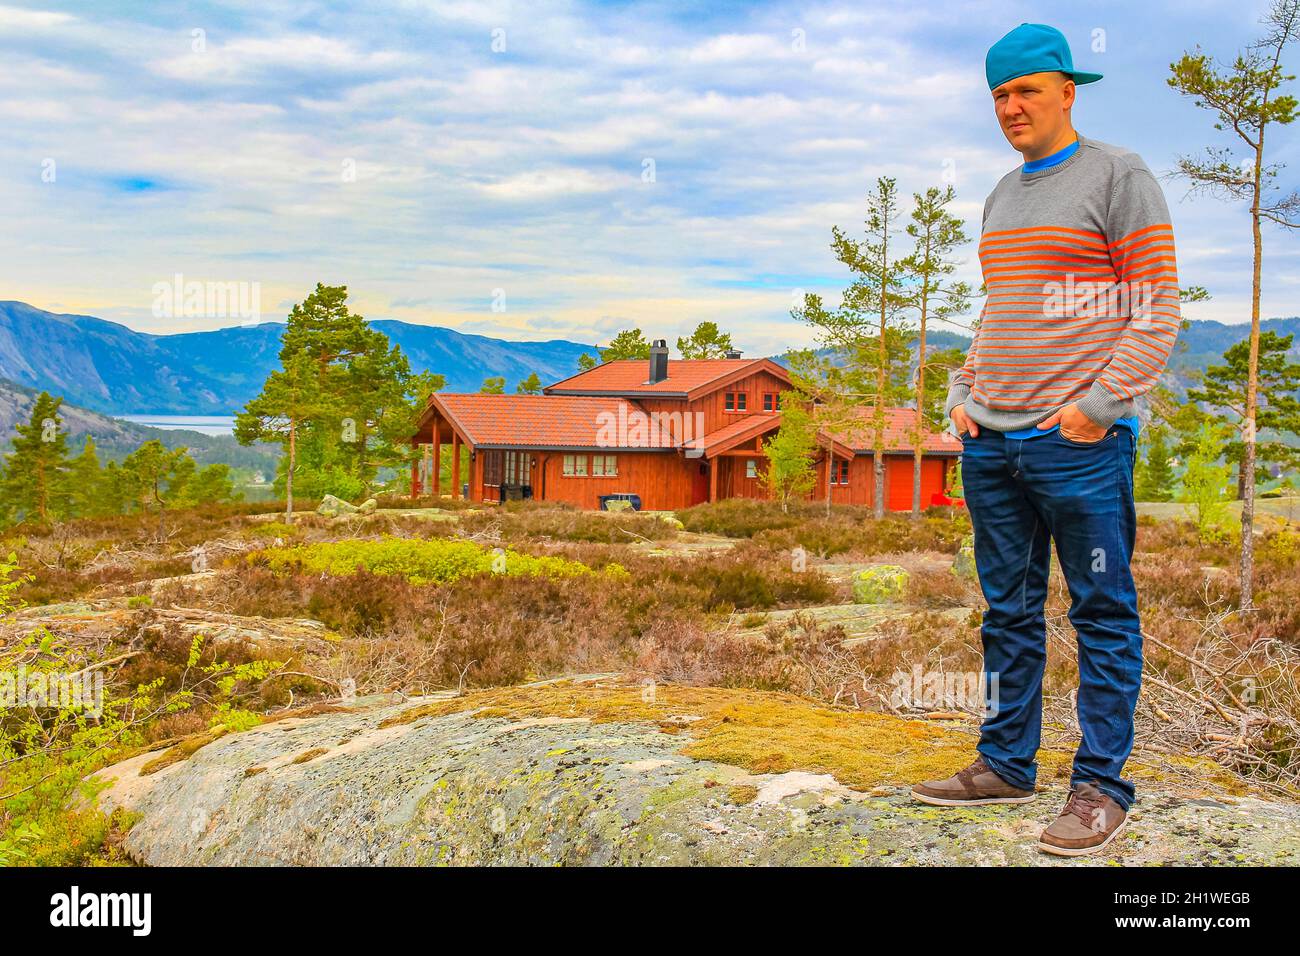 Les jeunes randonneurs regardent le paysage des chalets de montagnes norvégiennes de Treungen à Nissedal Norvège. Banque D'Images